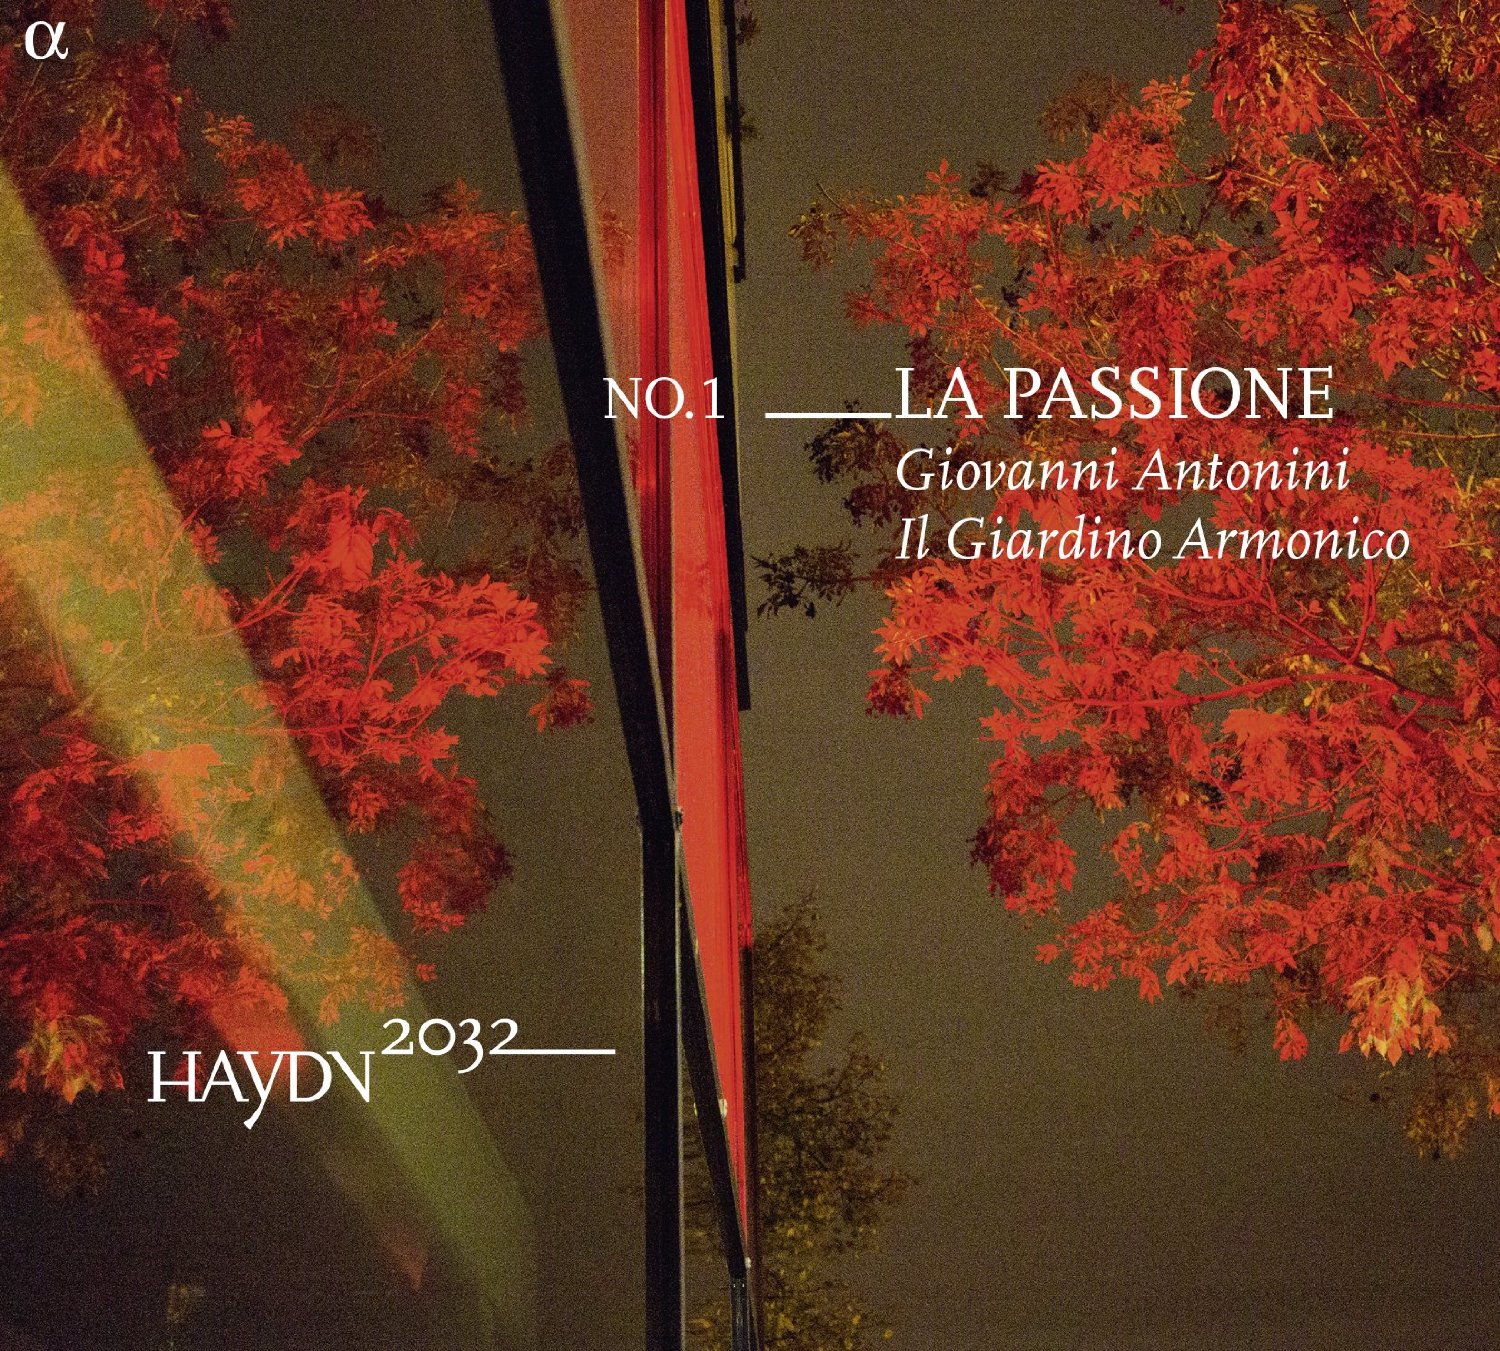 Audio Cd Joseph Haydn - La Passione NUOVO SIGILLATO, EDIZIONE DEL 25/09/2015 SUBITO DISPONIBILE